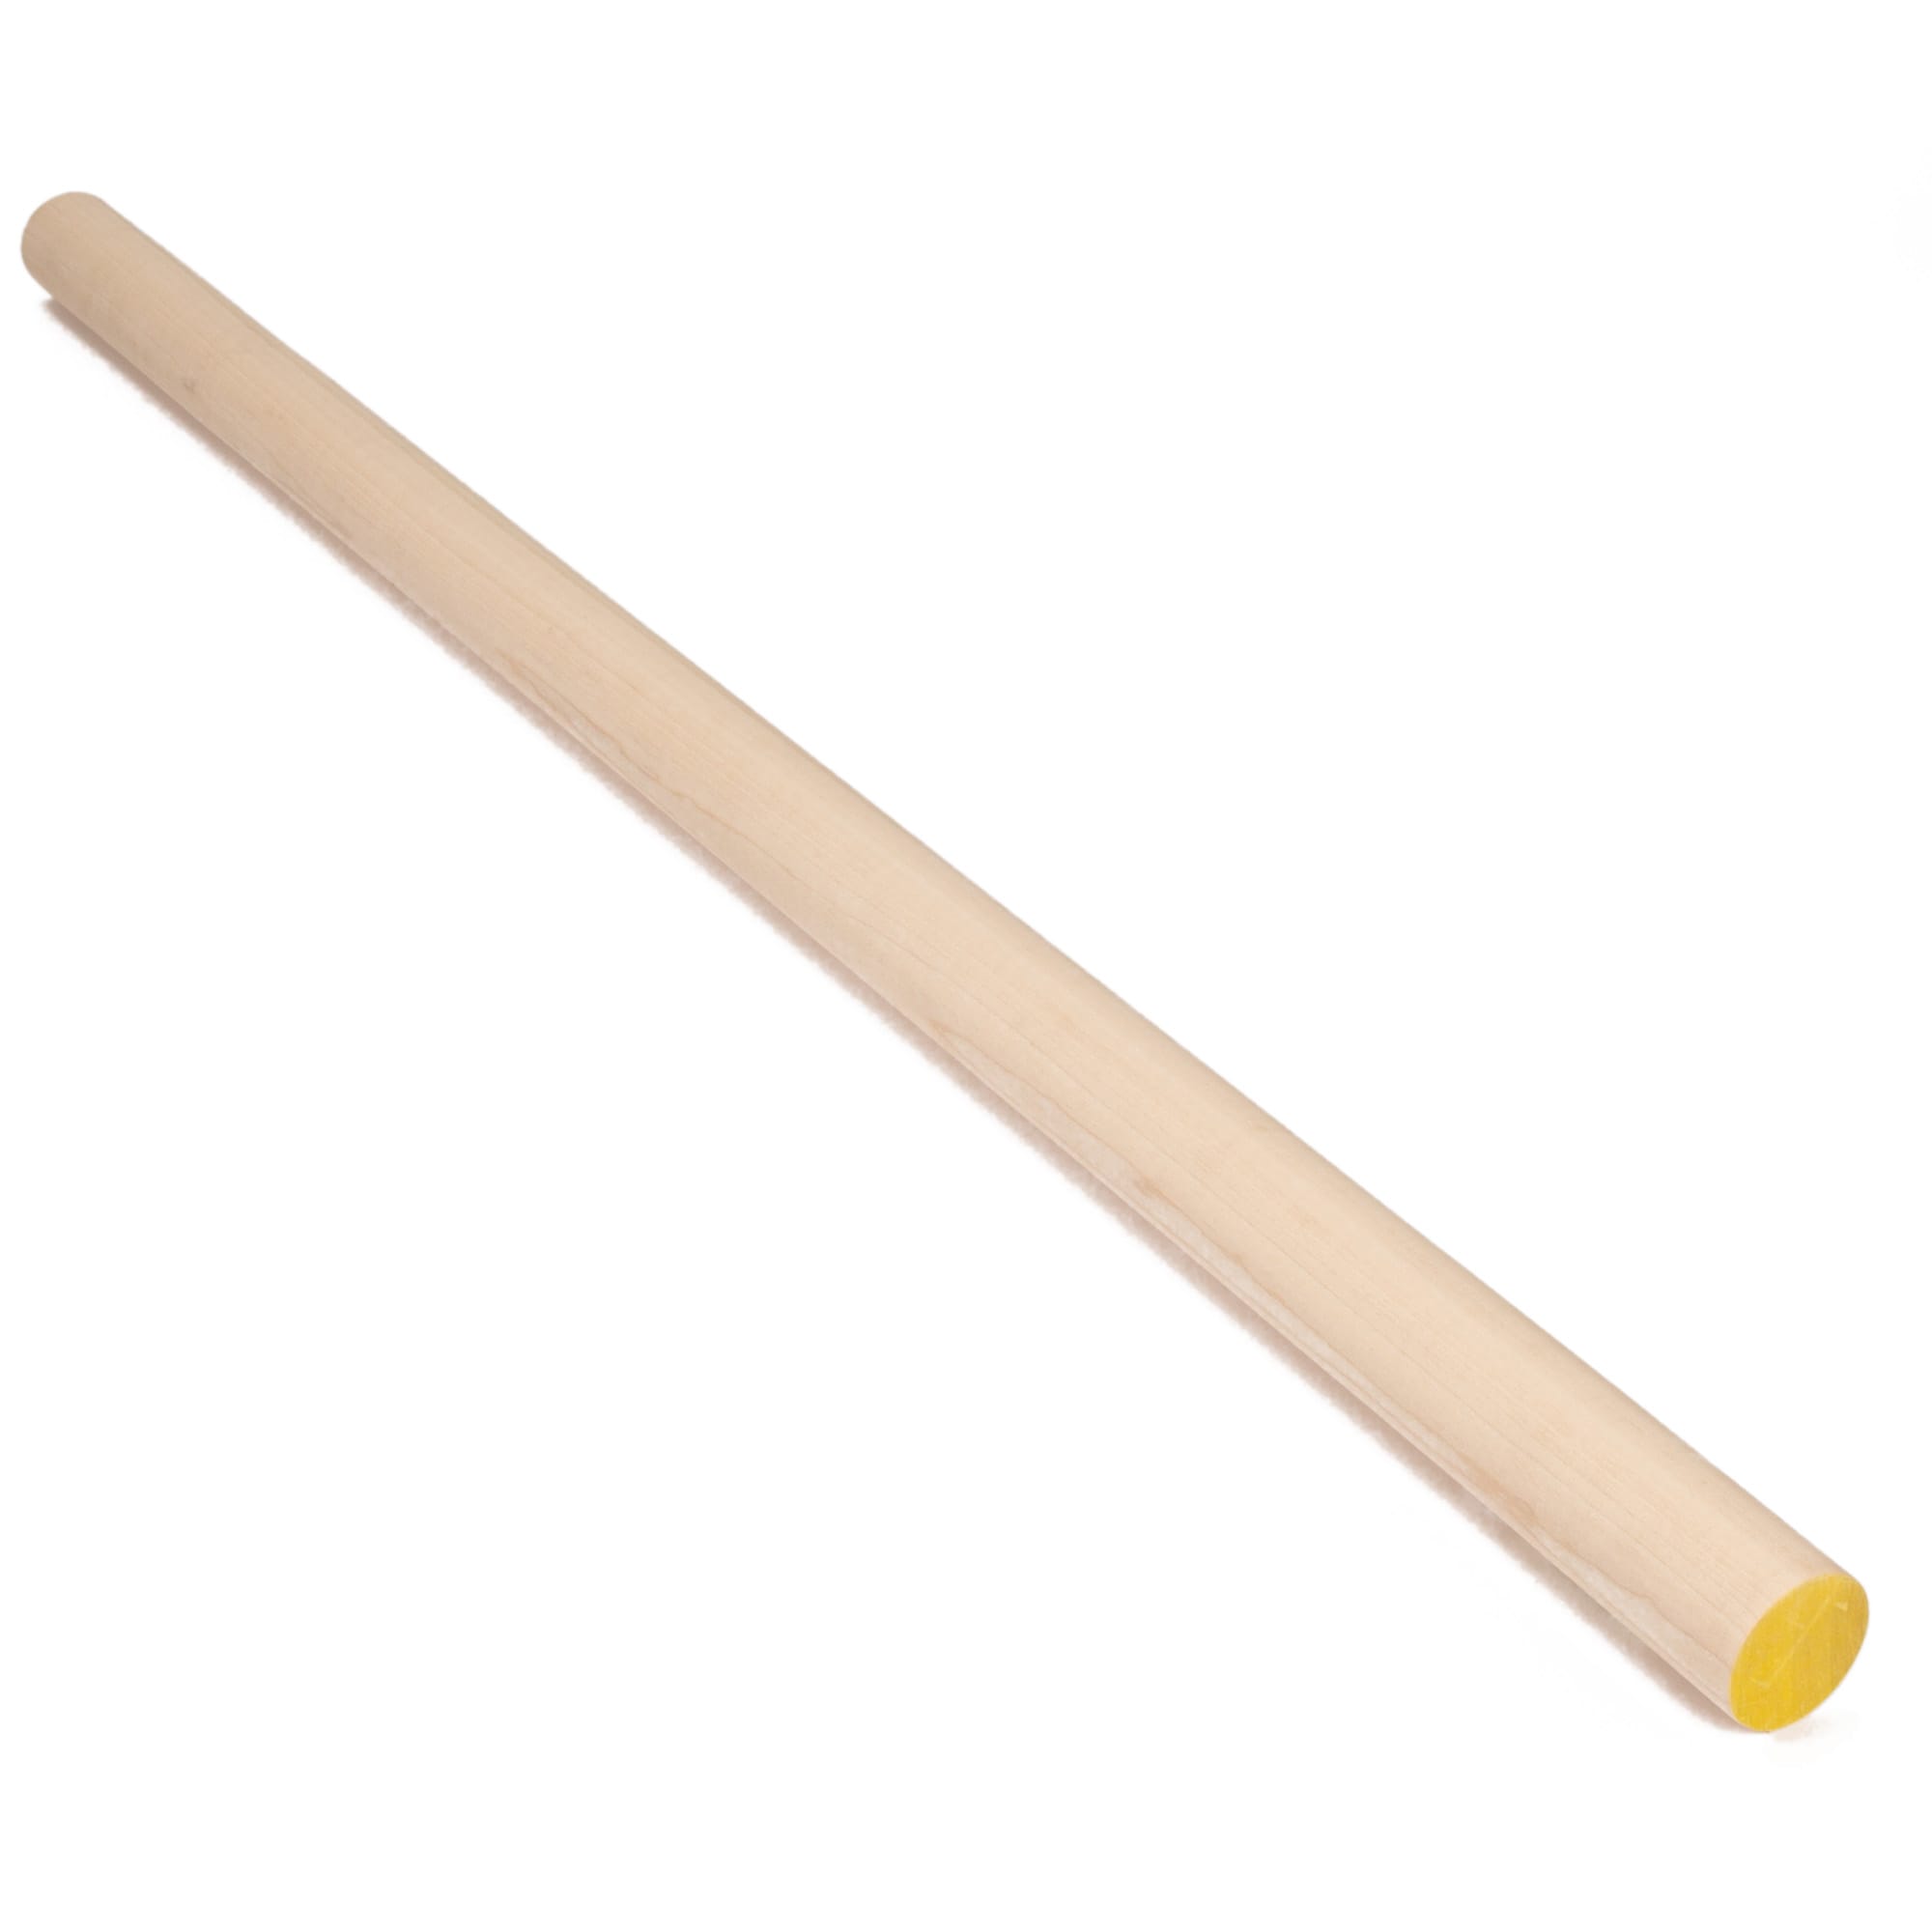 Wood Dowels - 1/4 Diameter X 48 Long 1/4” x 48” Wood Dowels [#208L